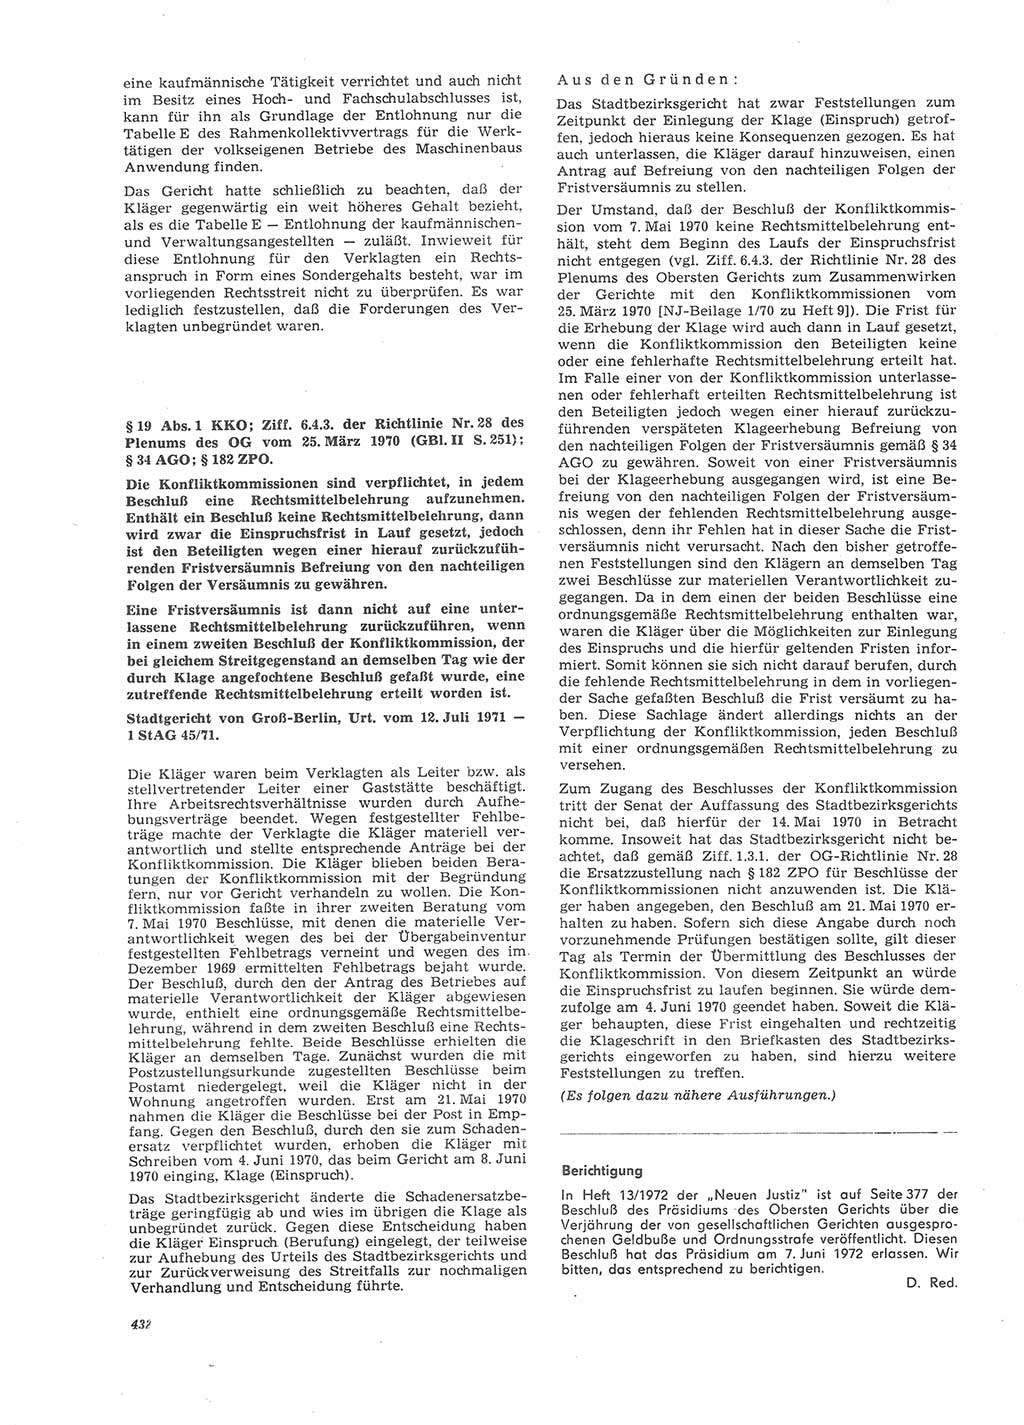 Neue Justiz (NJ), Zeitschrift für Recht und Rechtswissenschaft [Deutsche Demokratische Republik (DDR)], 26. Jahrgang 1972, Seite 432 (NJ DDR 1972, S. 432)